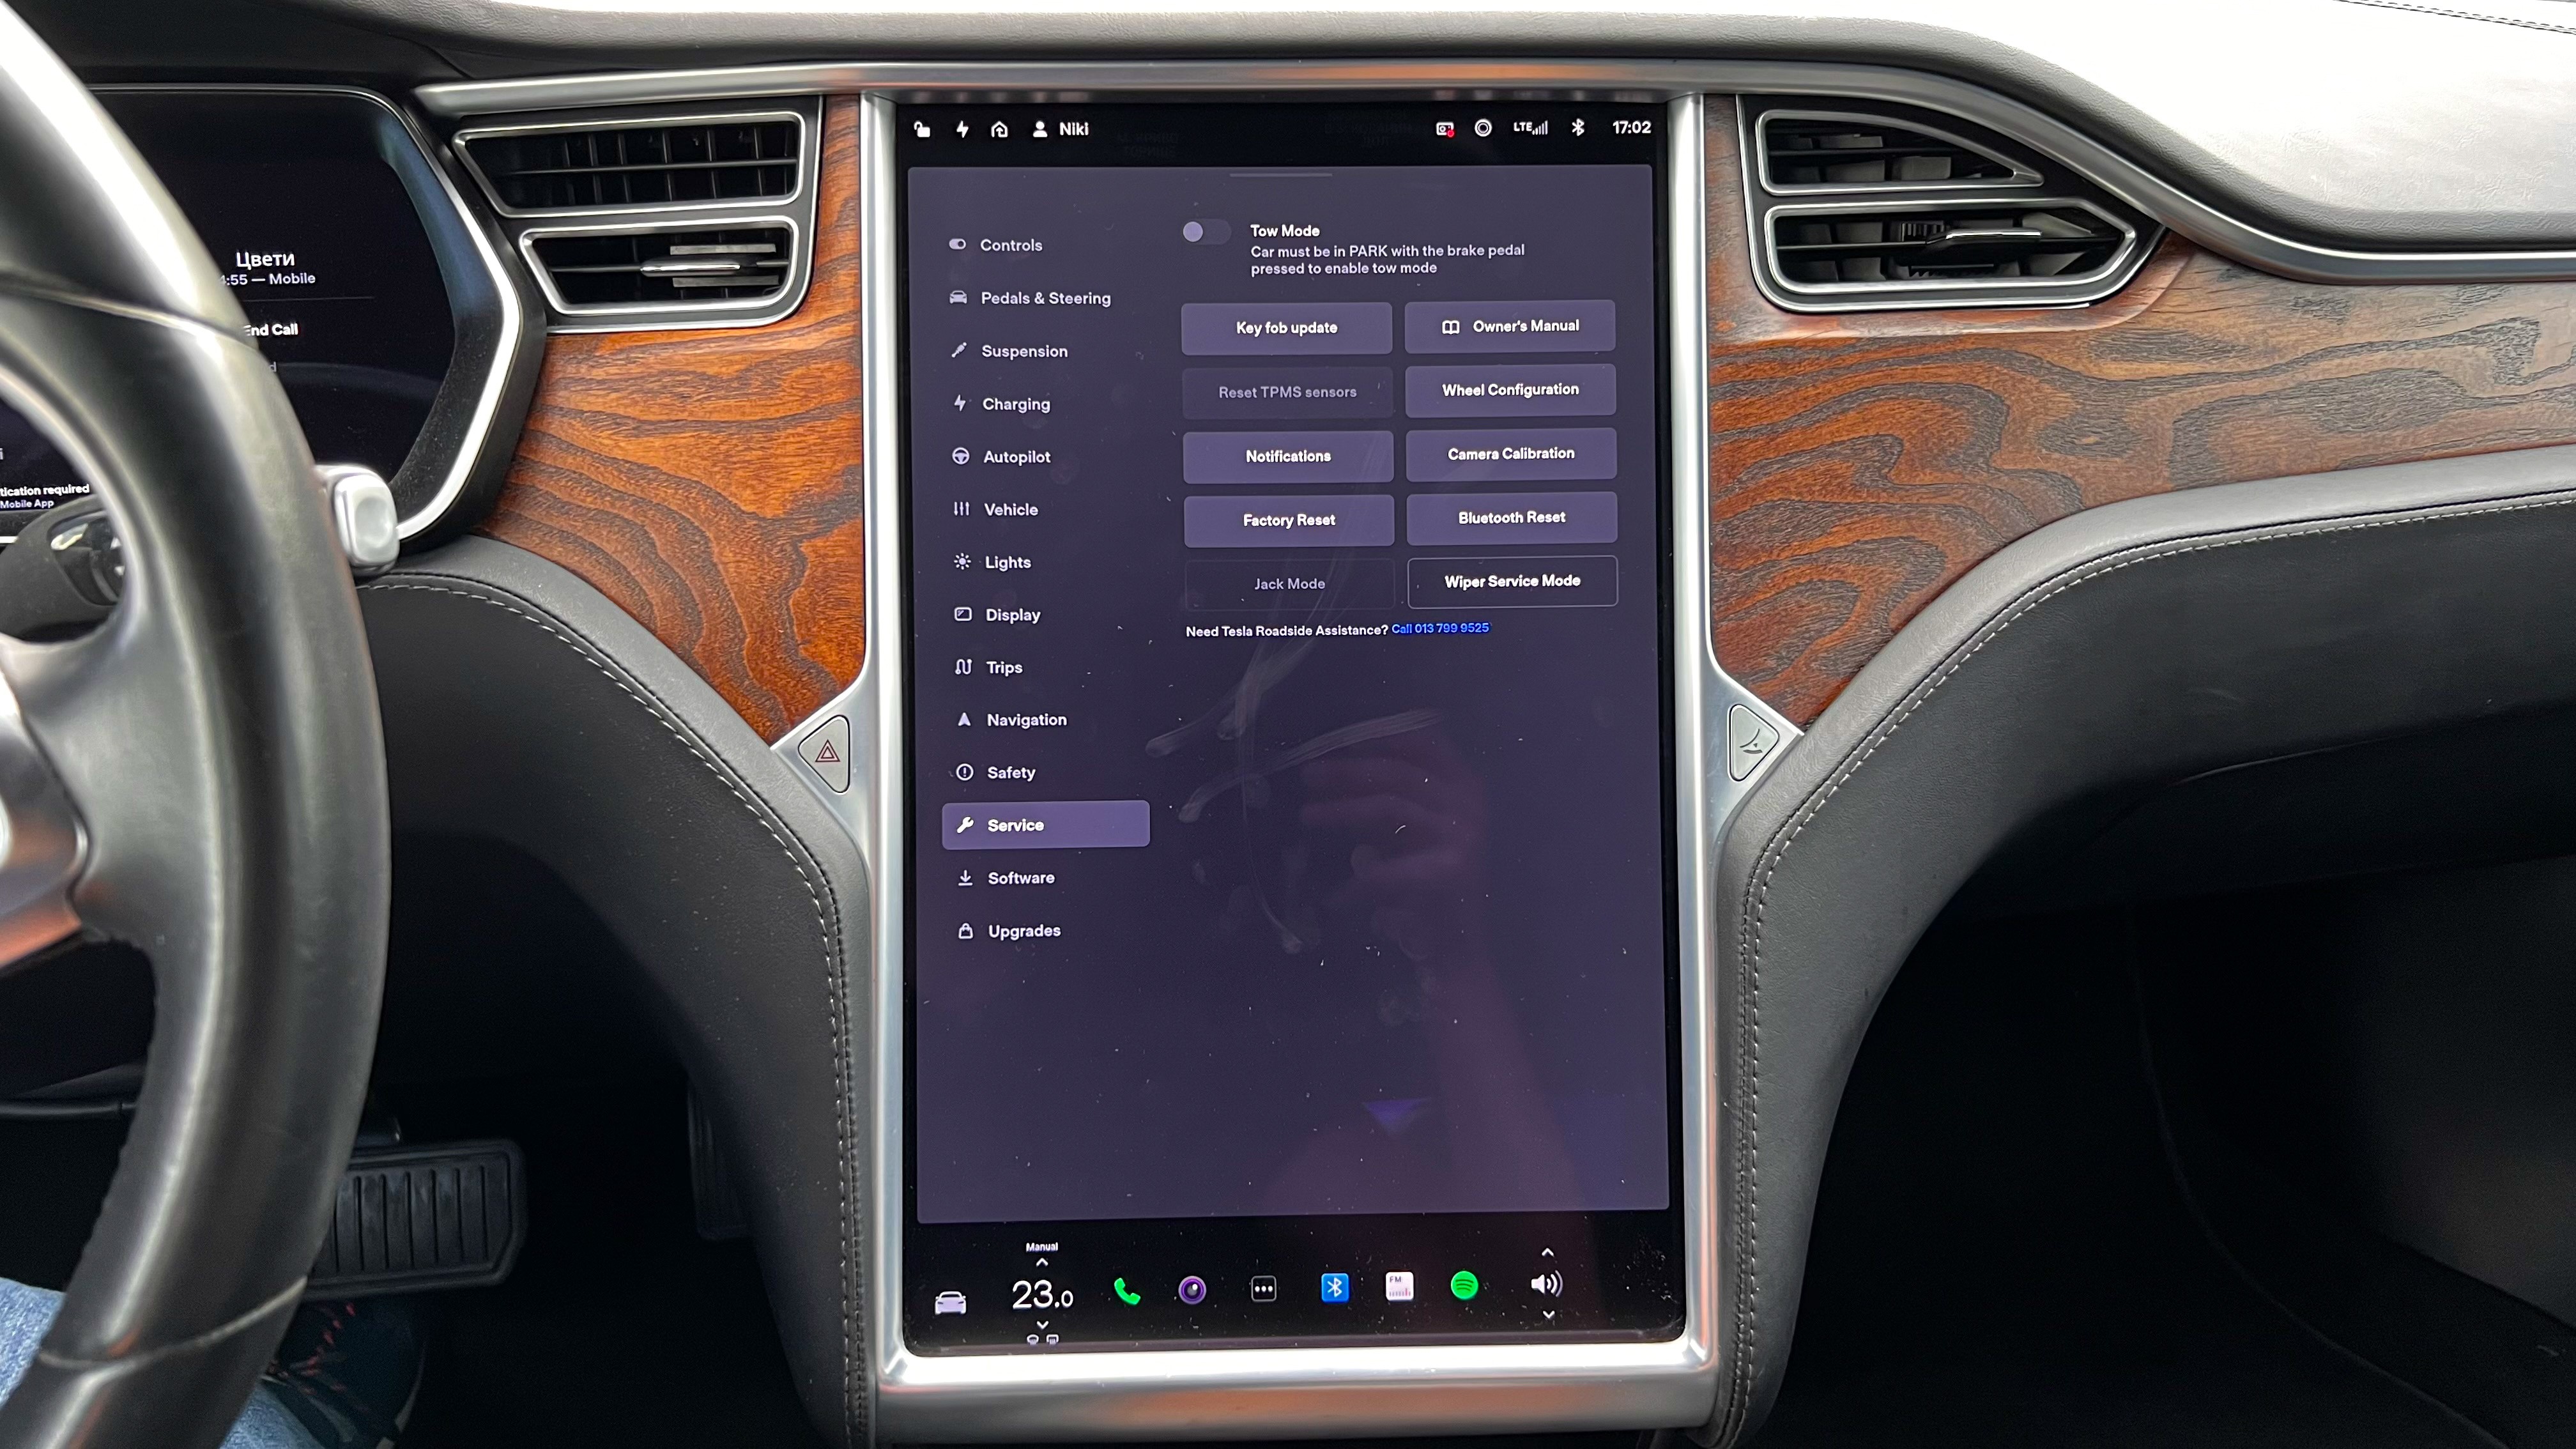 Обзор подержанного автомобиля Tesla Model S 75D 2018 года